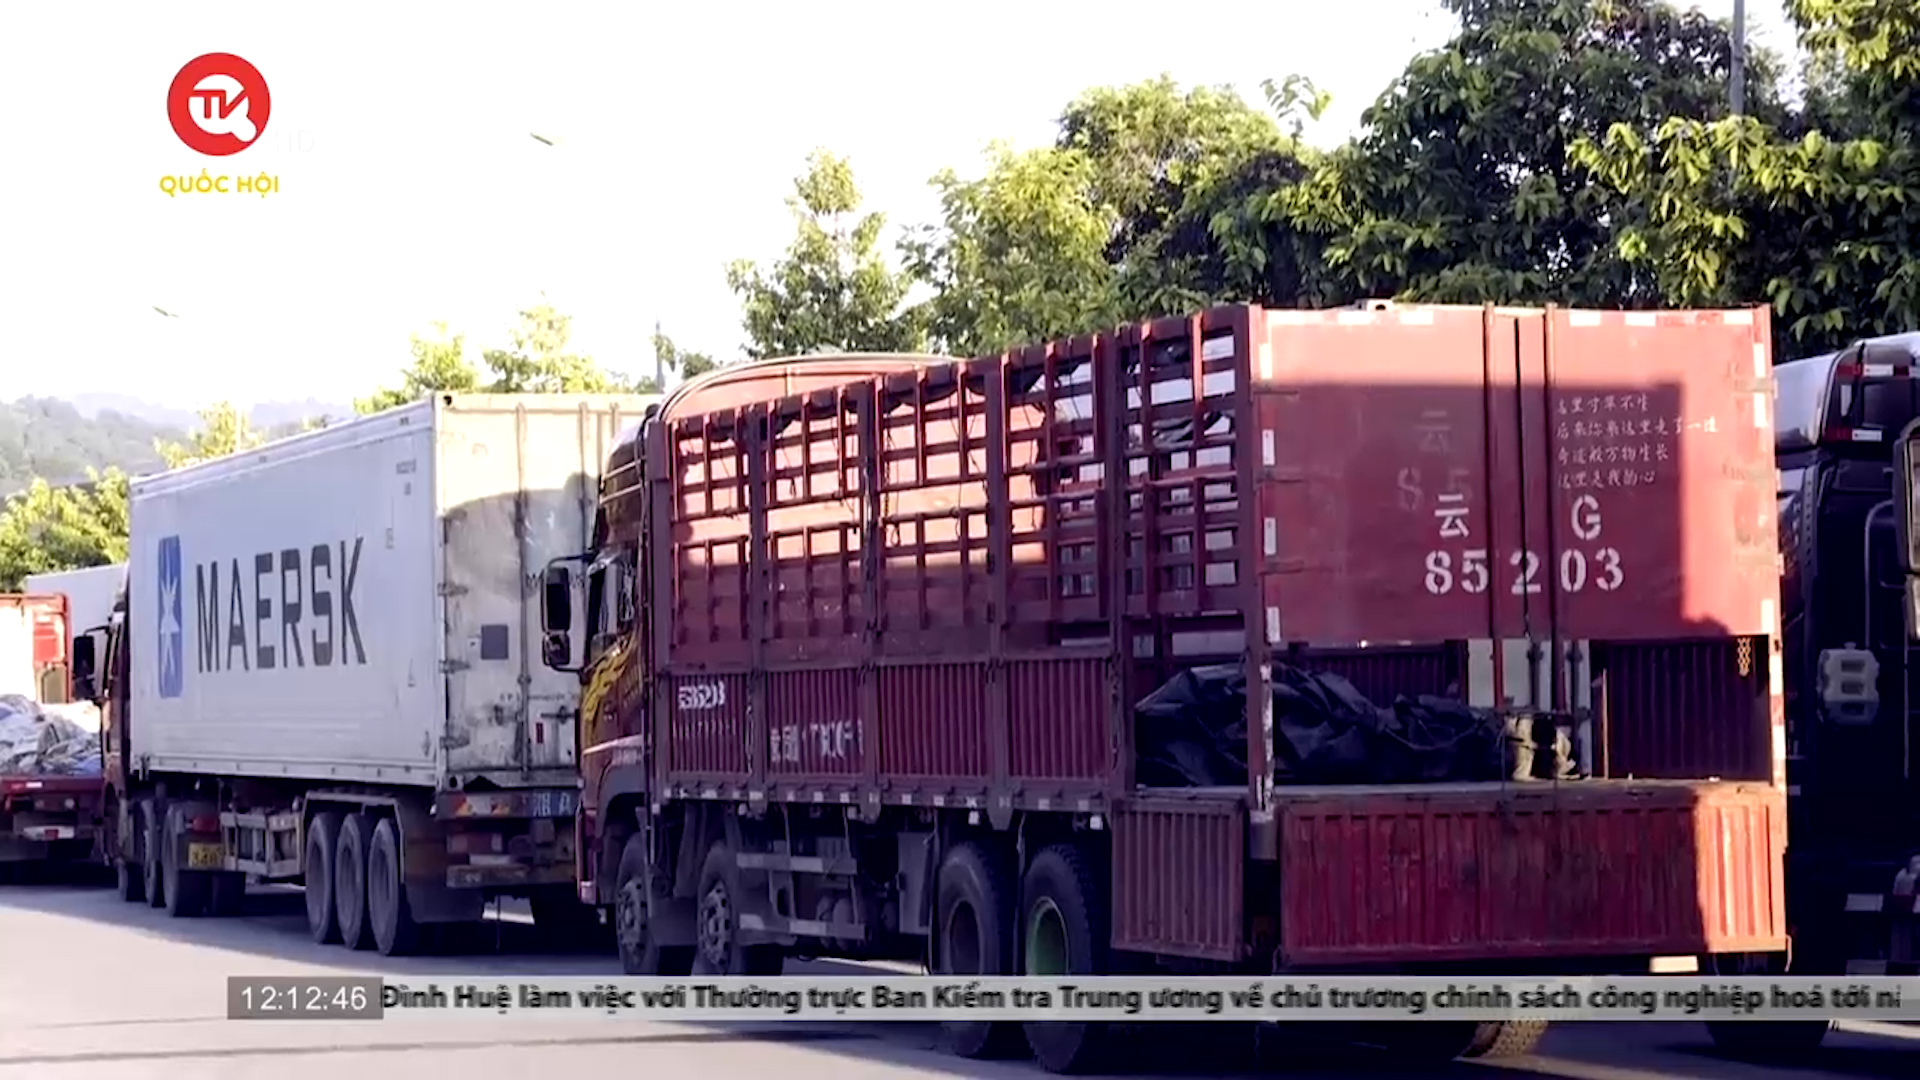 Thiếu lái xe trung chuyển, hàng nghìn phương tiện chở hàng bị “mắc kẹt” tại cửa khẩu Lào Cai